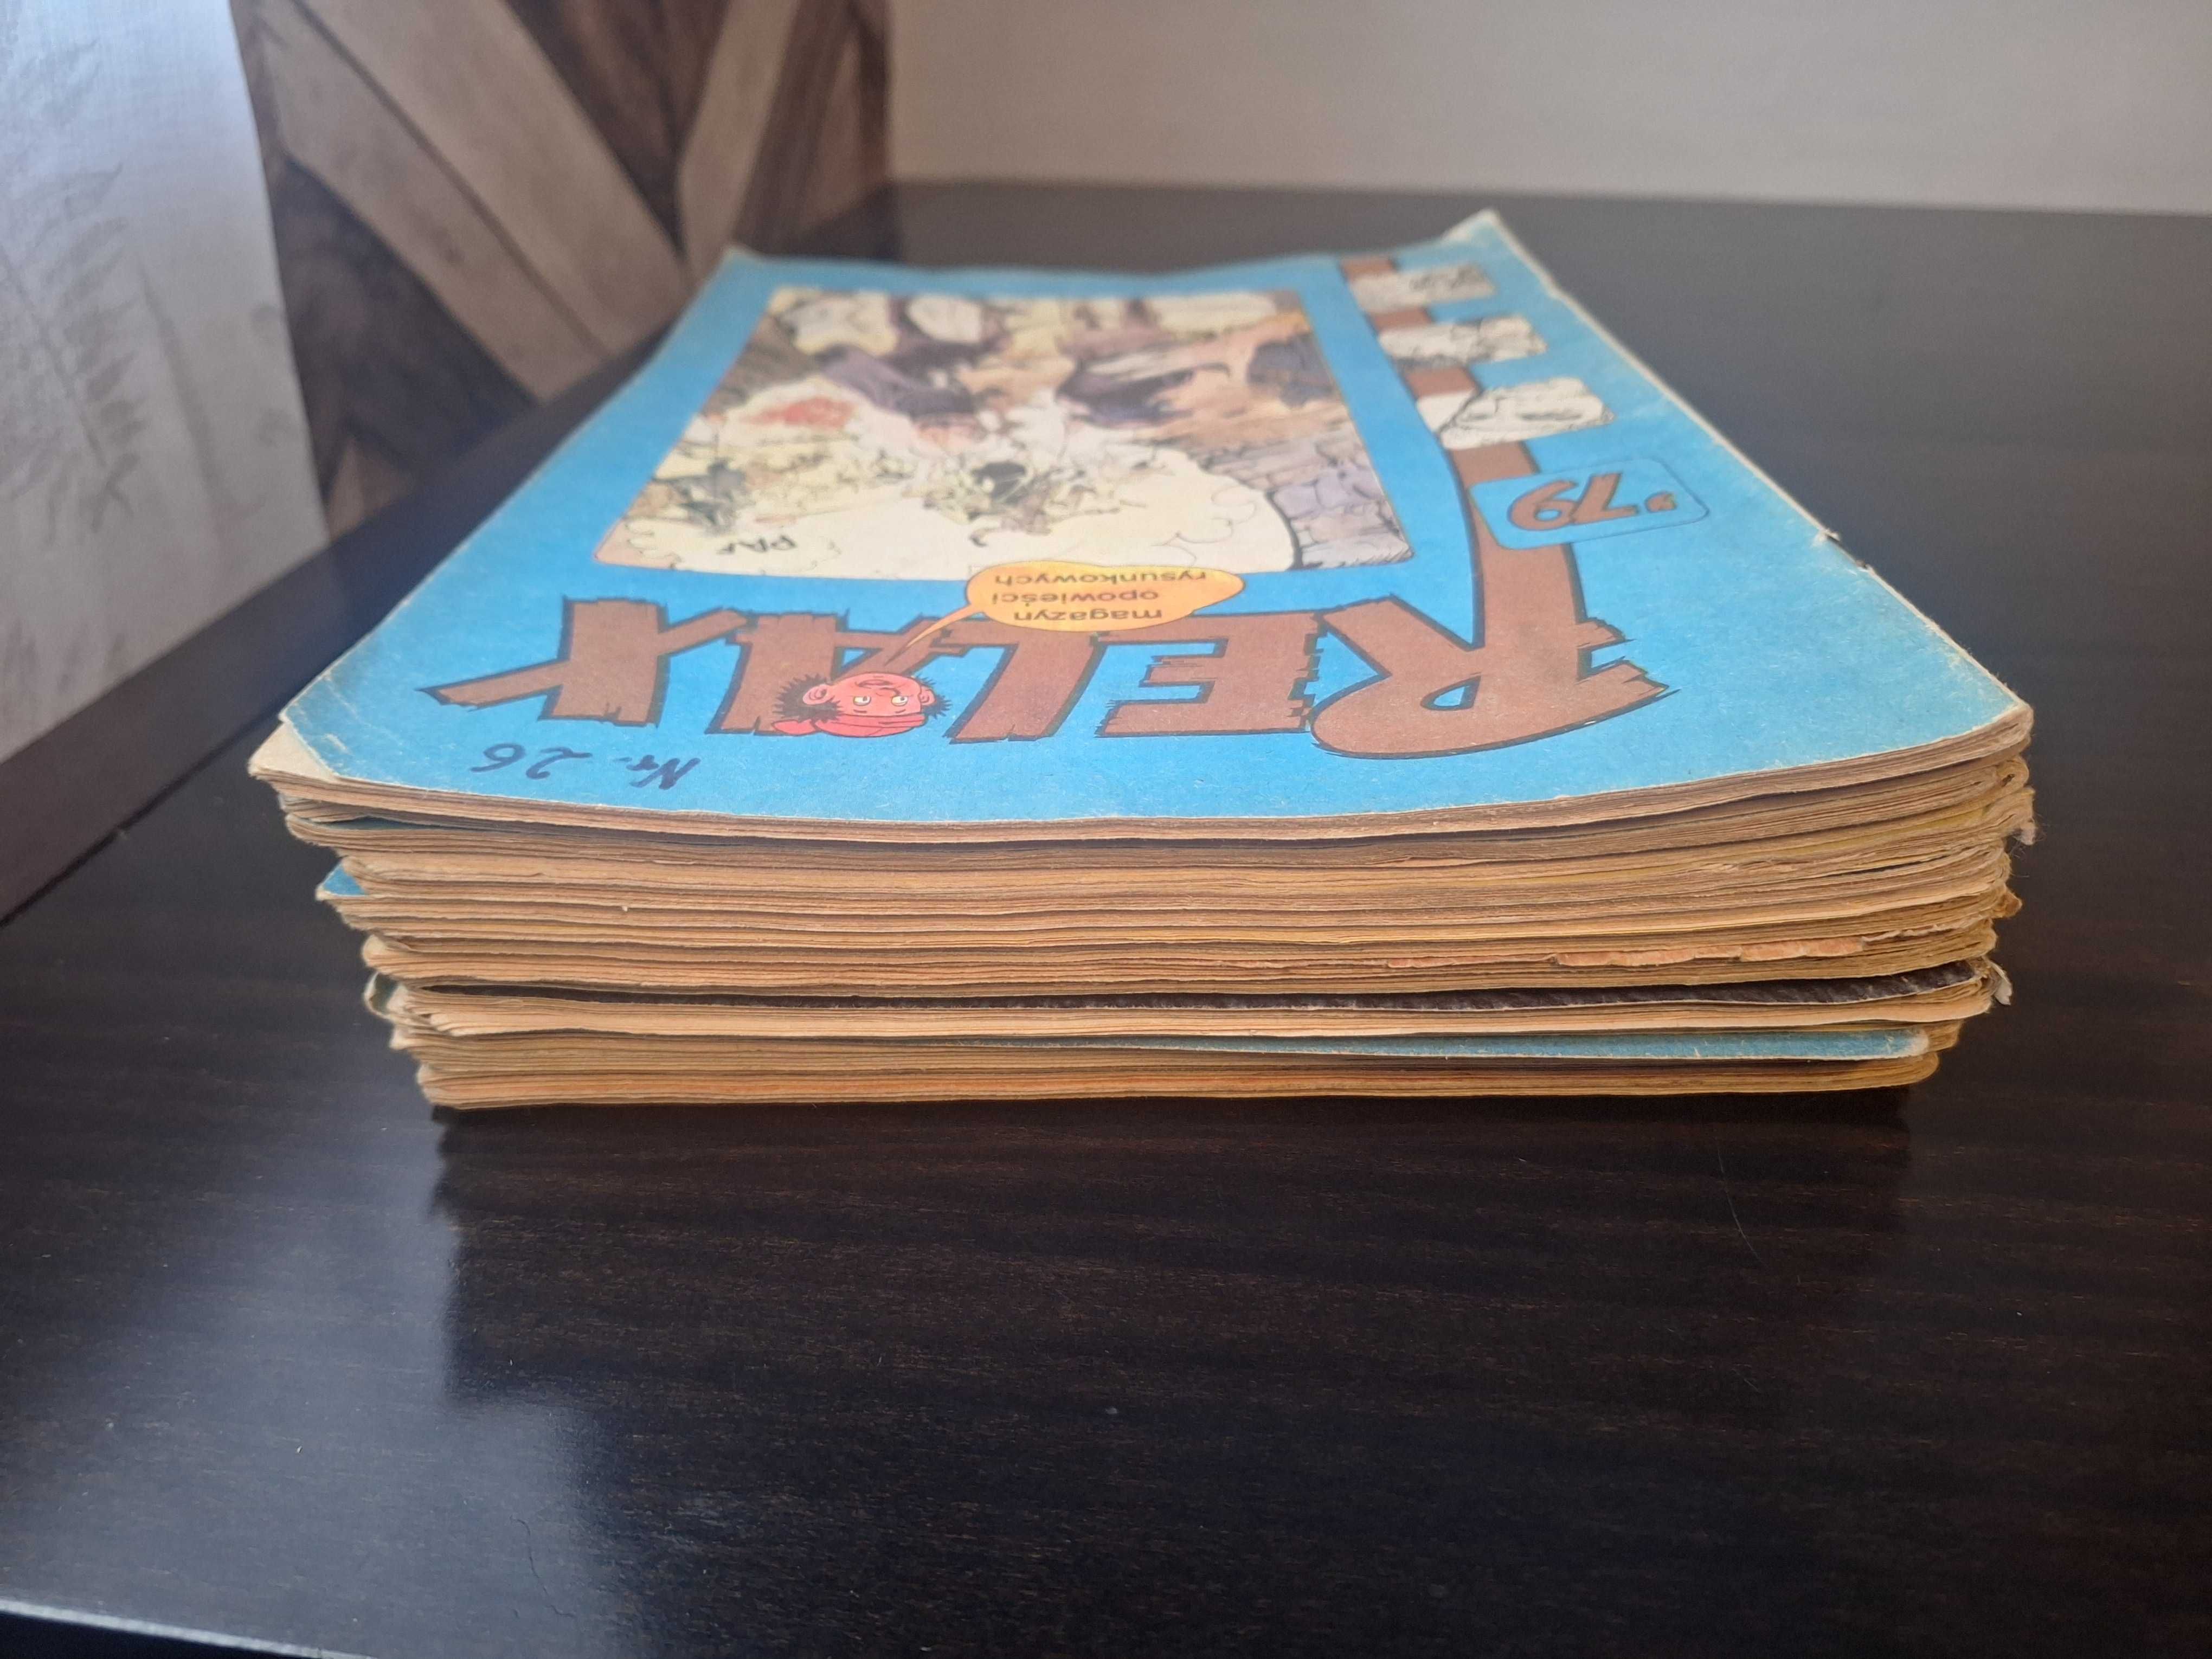 Komiksy Relax zestaw lata 70-80  18 zeszytów.